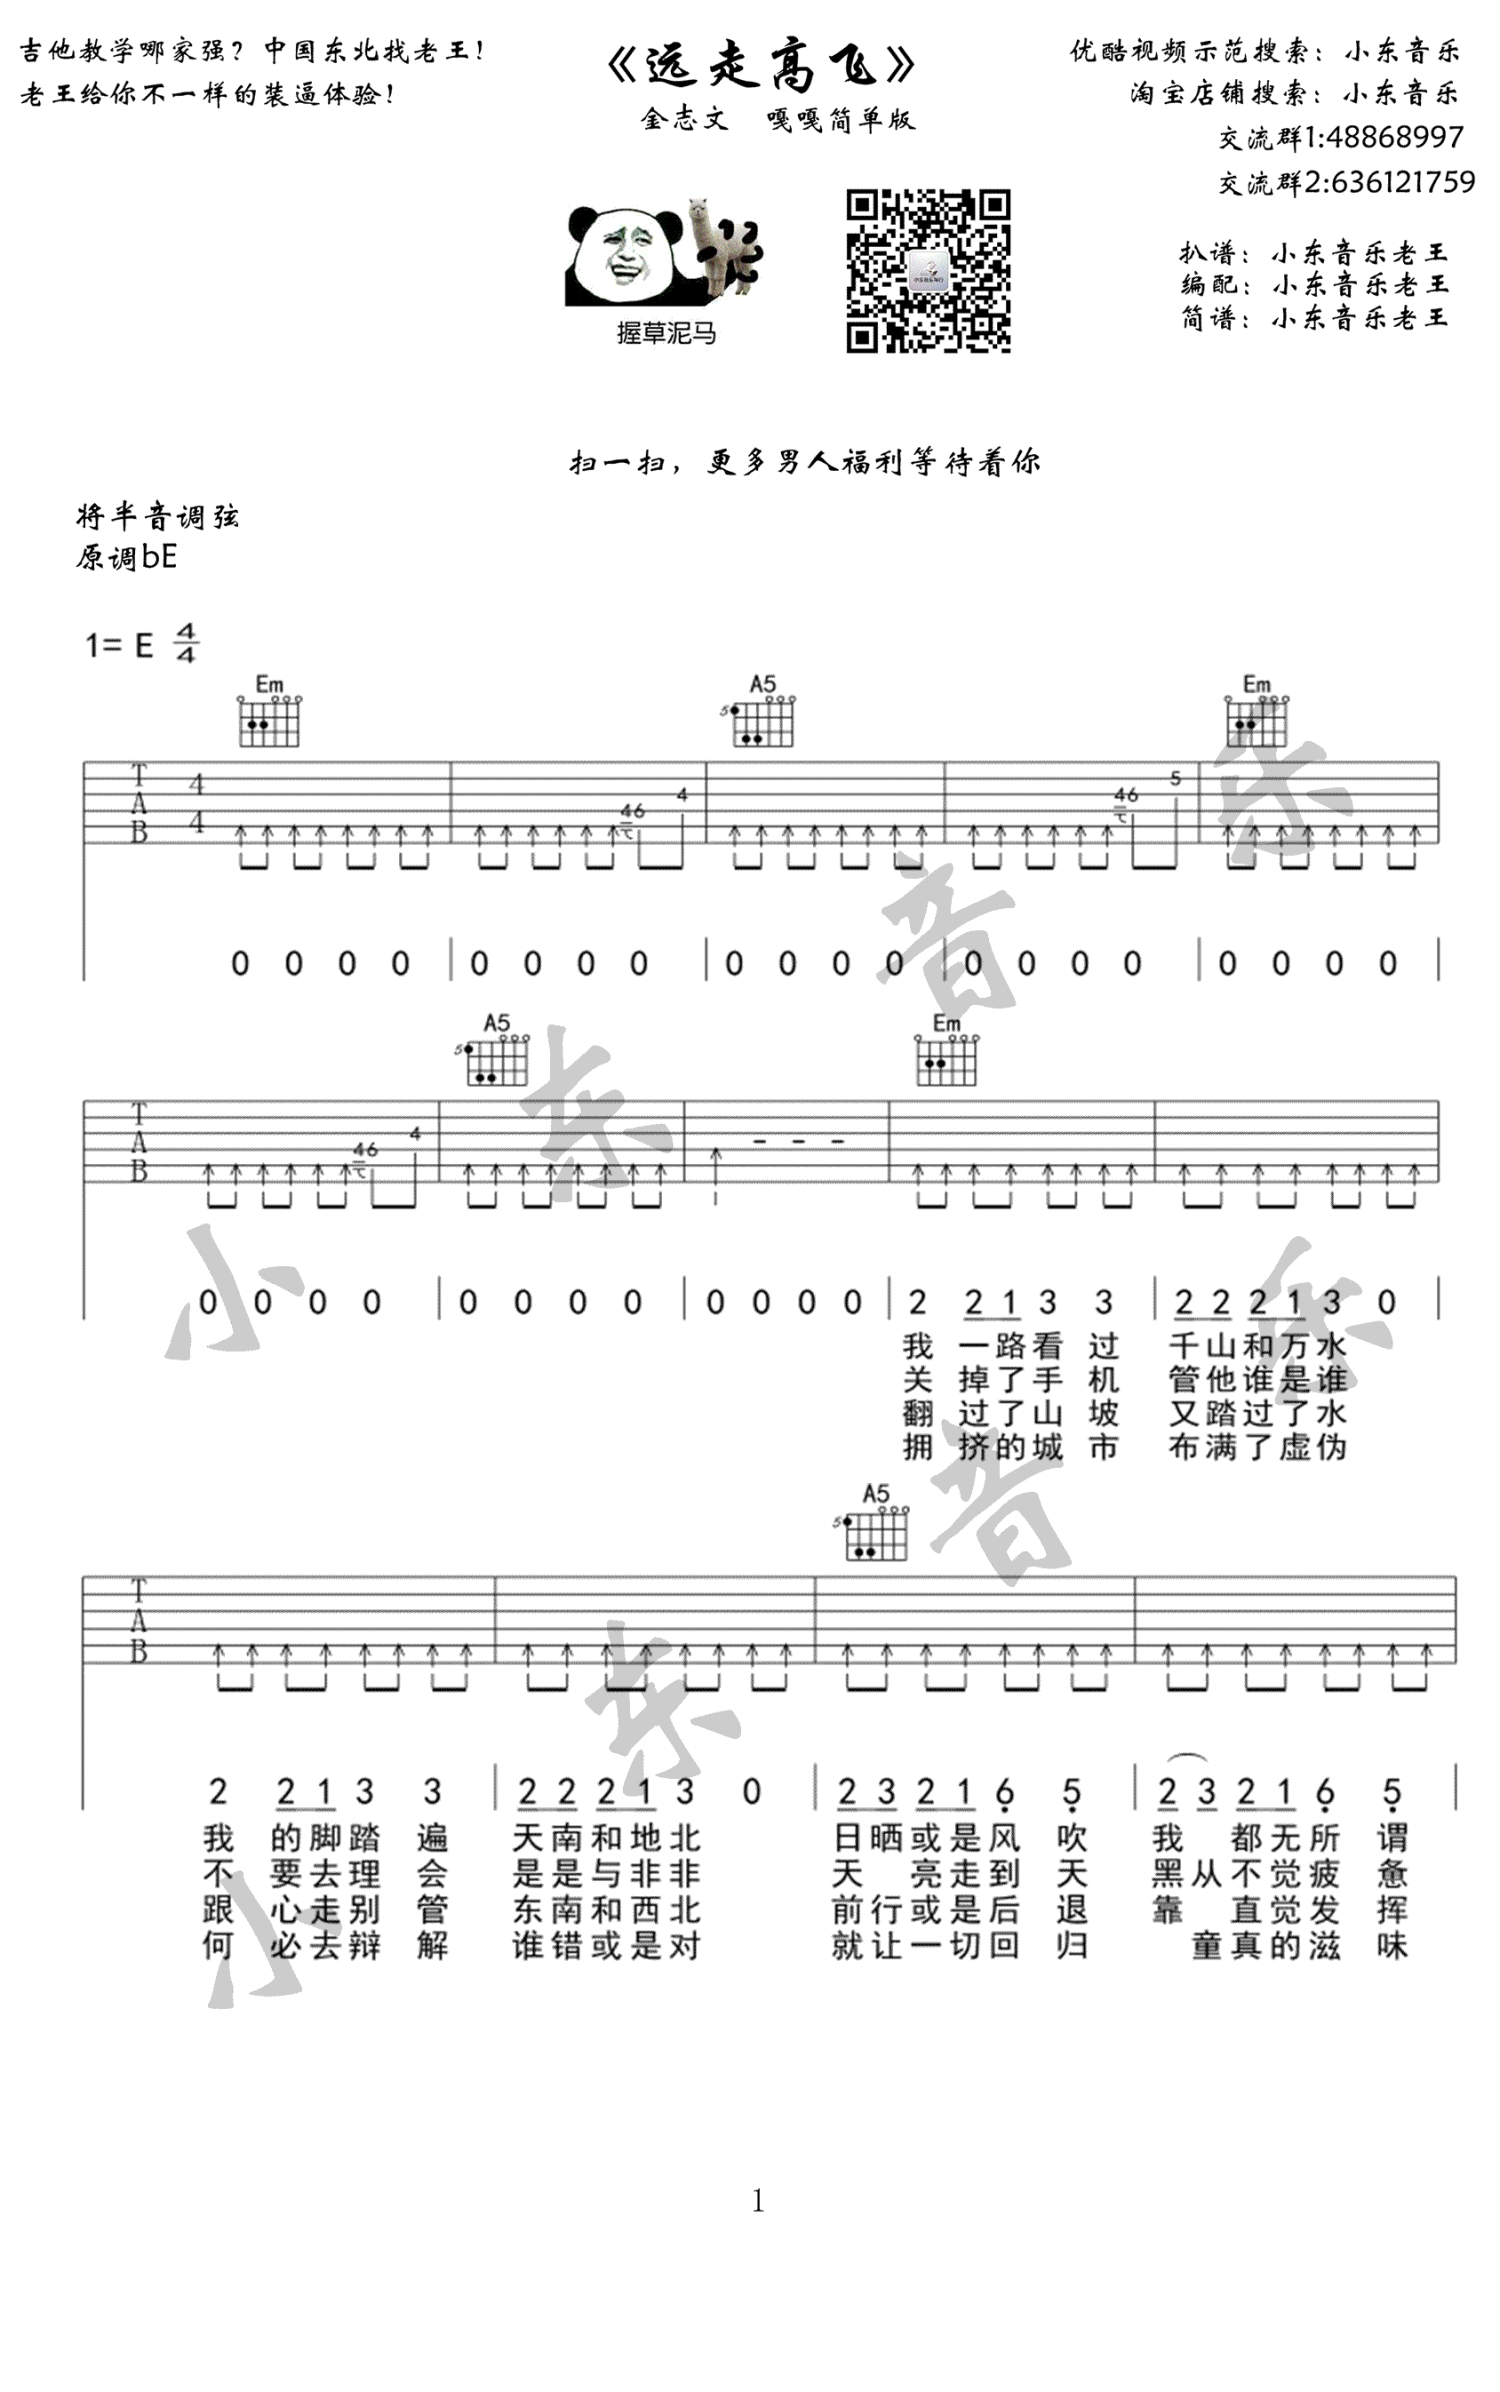 自娛自樂 - 金志文 - 吉他谱 - Chord4